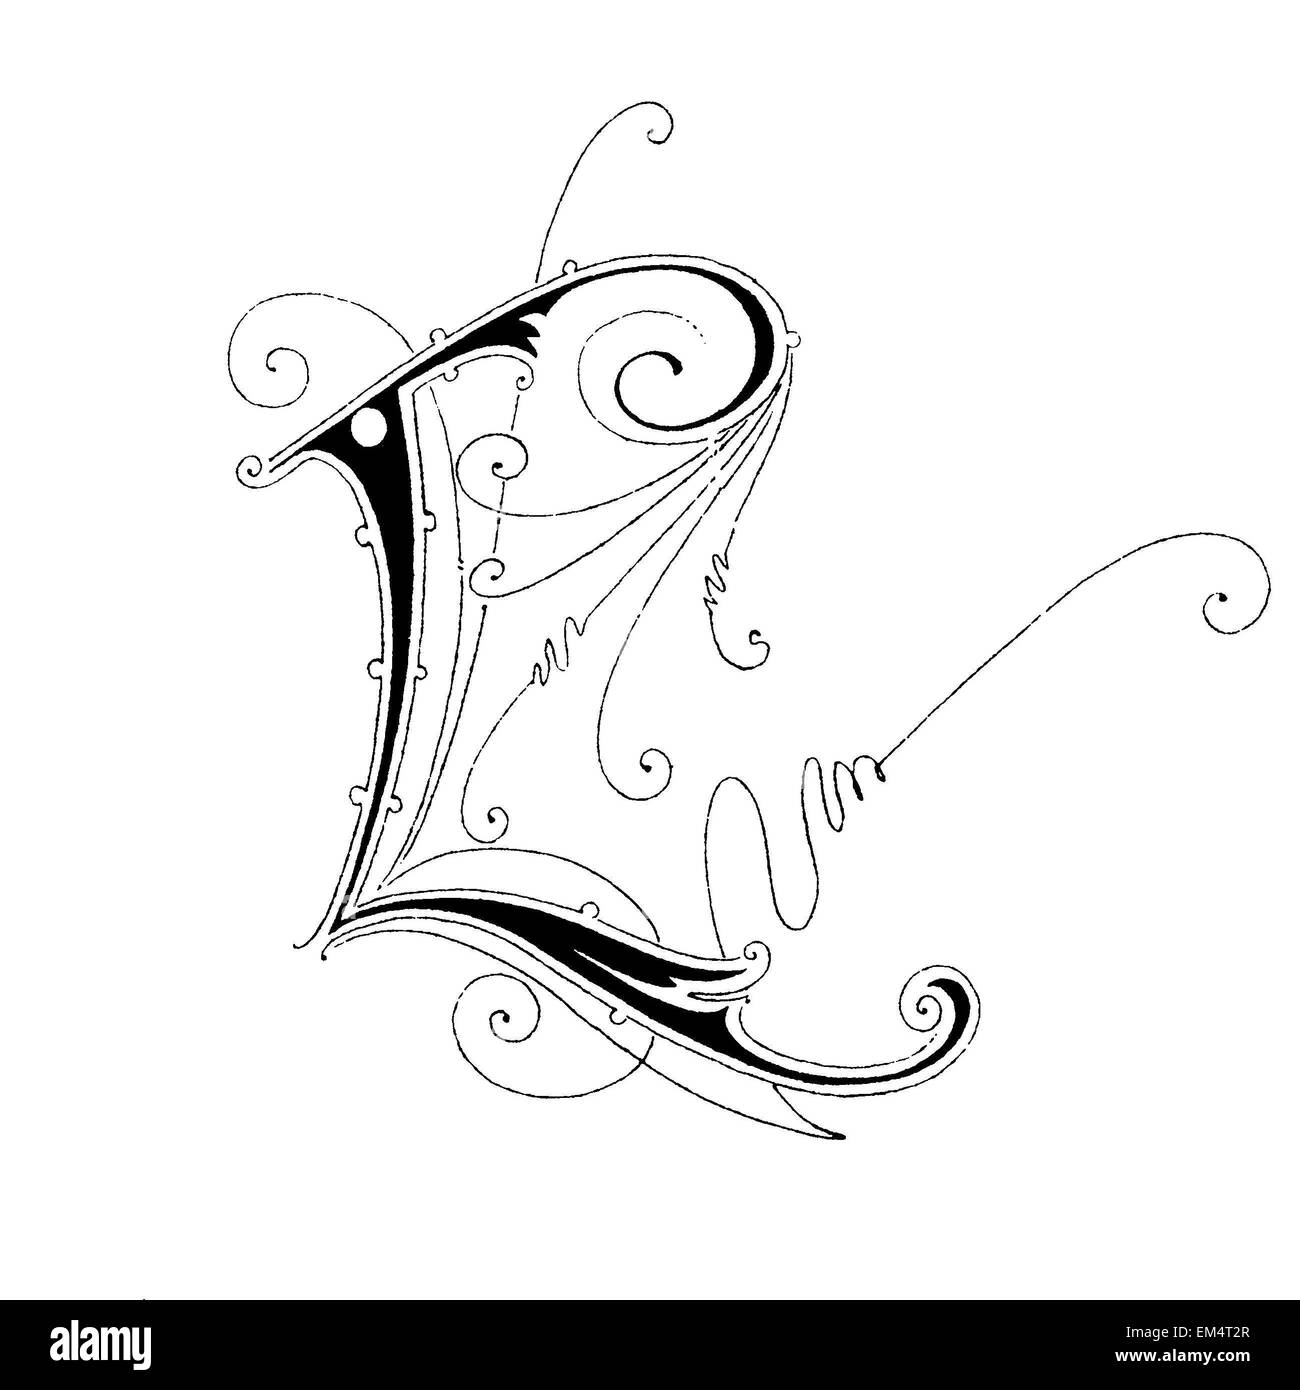 La letra L, Fuente: Art Nouveau. Foto de stock